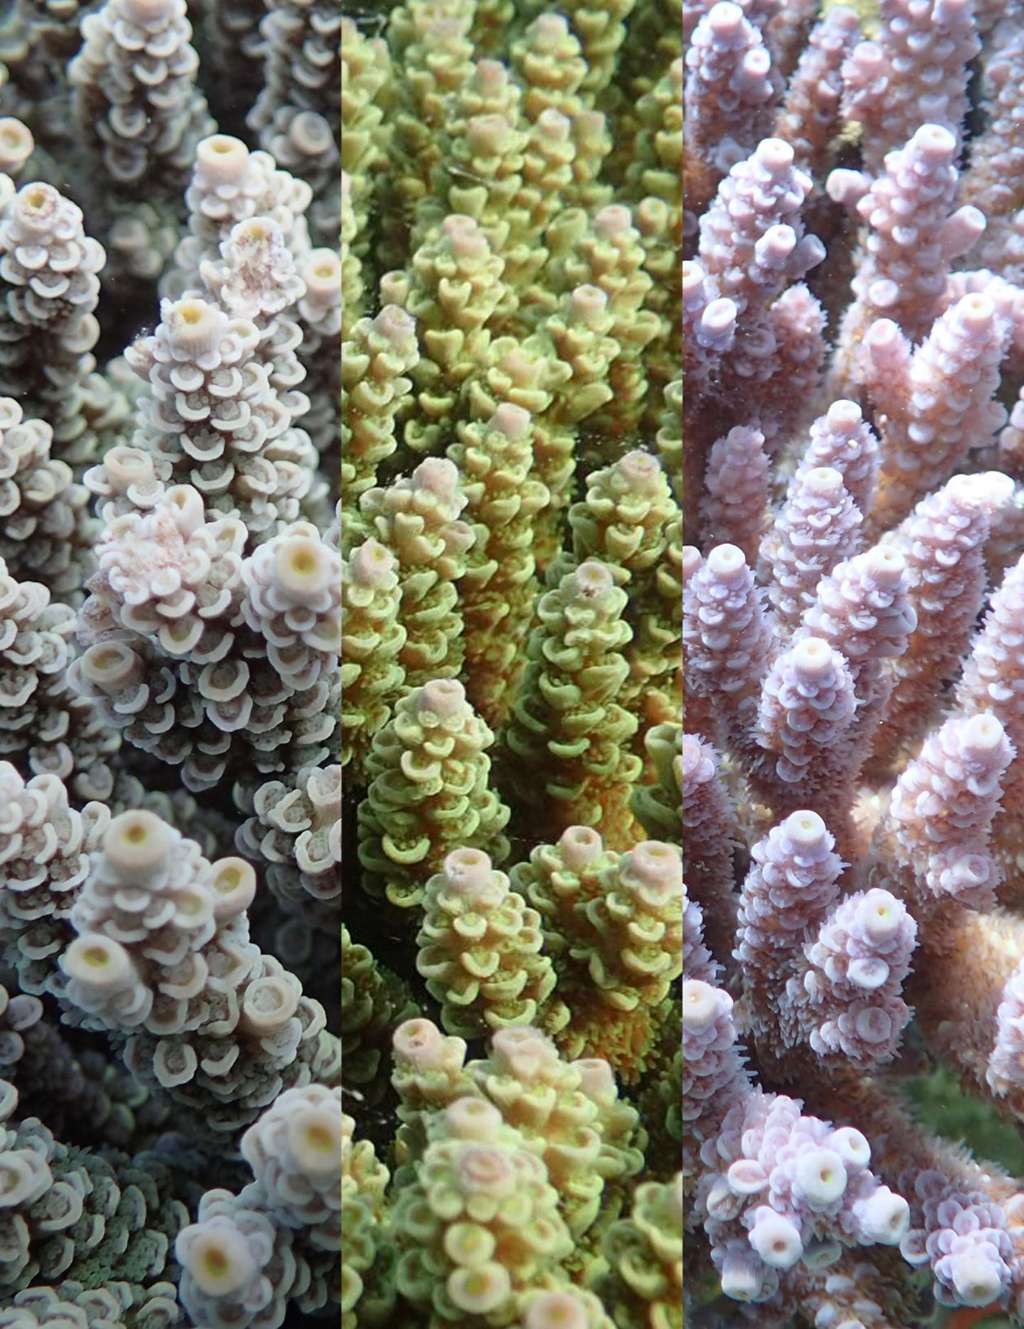 De gauche à droite : la forme brune, jaune-vert, et violette des coraux étudiés. © Daisuke Kezuka